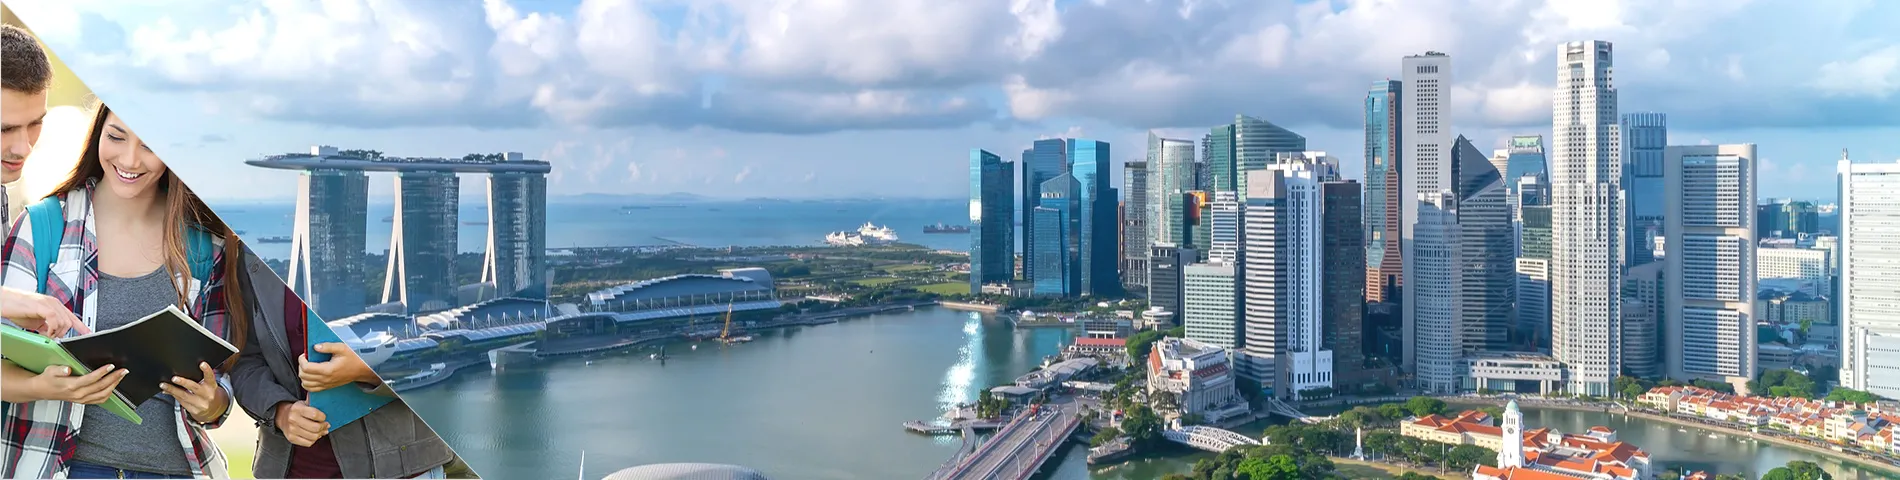 新加坡 - 